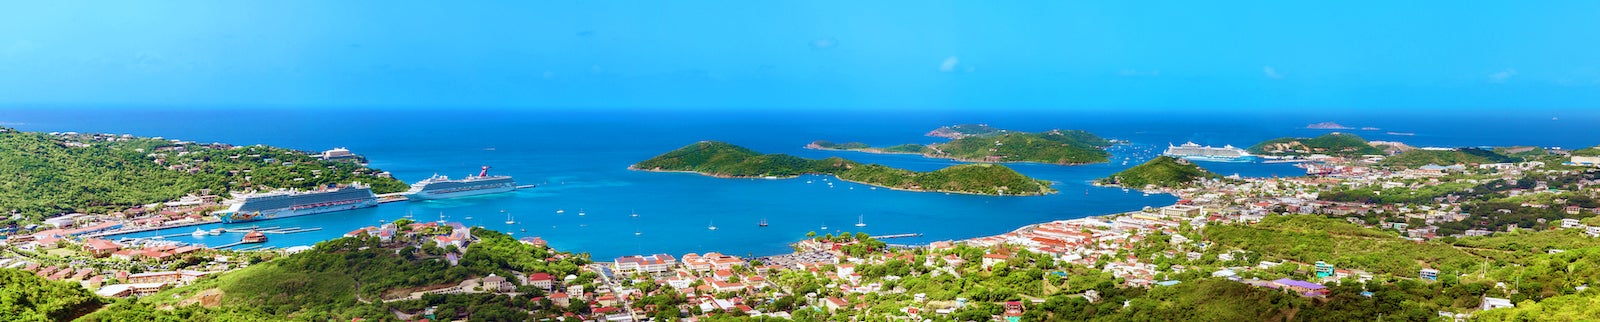 Charlotte Amalie, St. Thomas, US Virgin islands